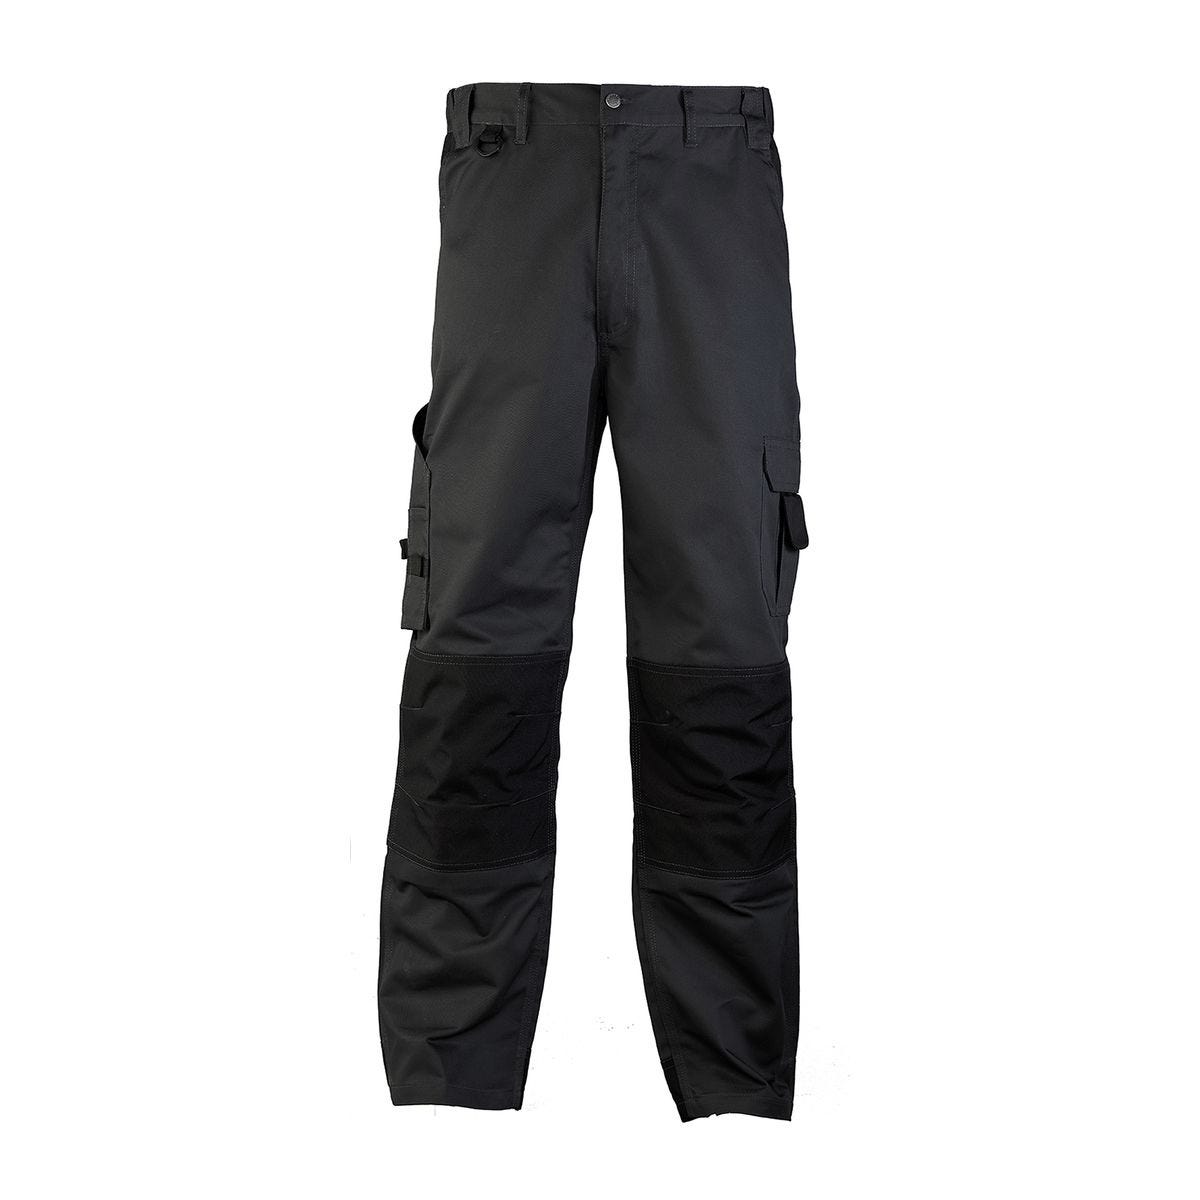 Pantalon CLASS gris foncé - COVERGUARD - Taille XL 0